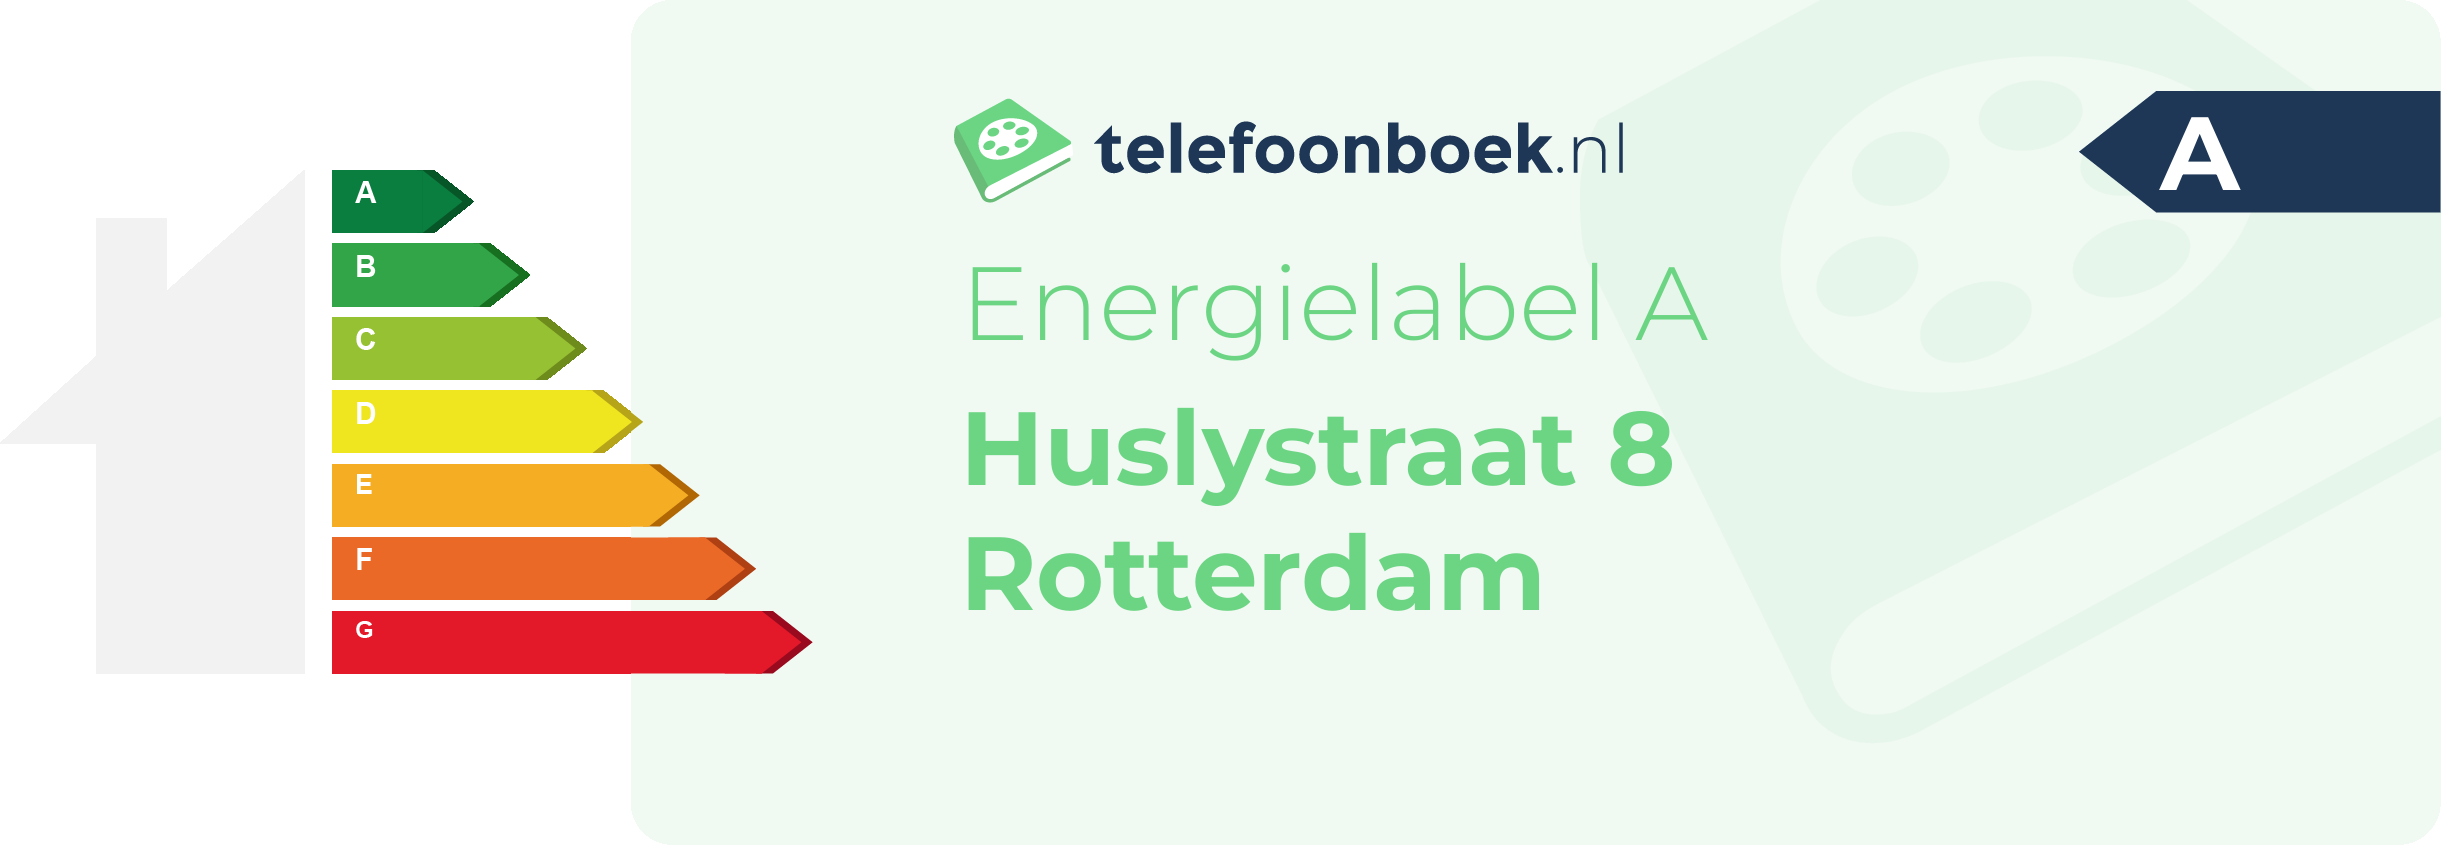 Energielabel Huslystraat 8 Rotterdam